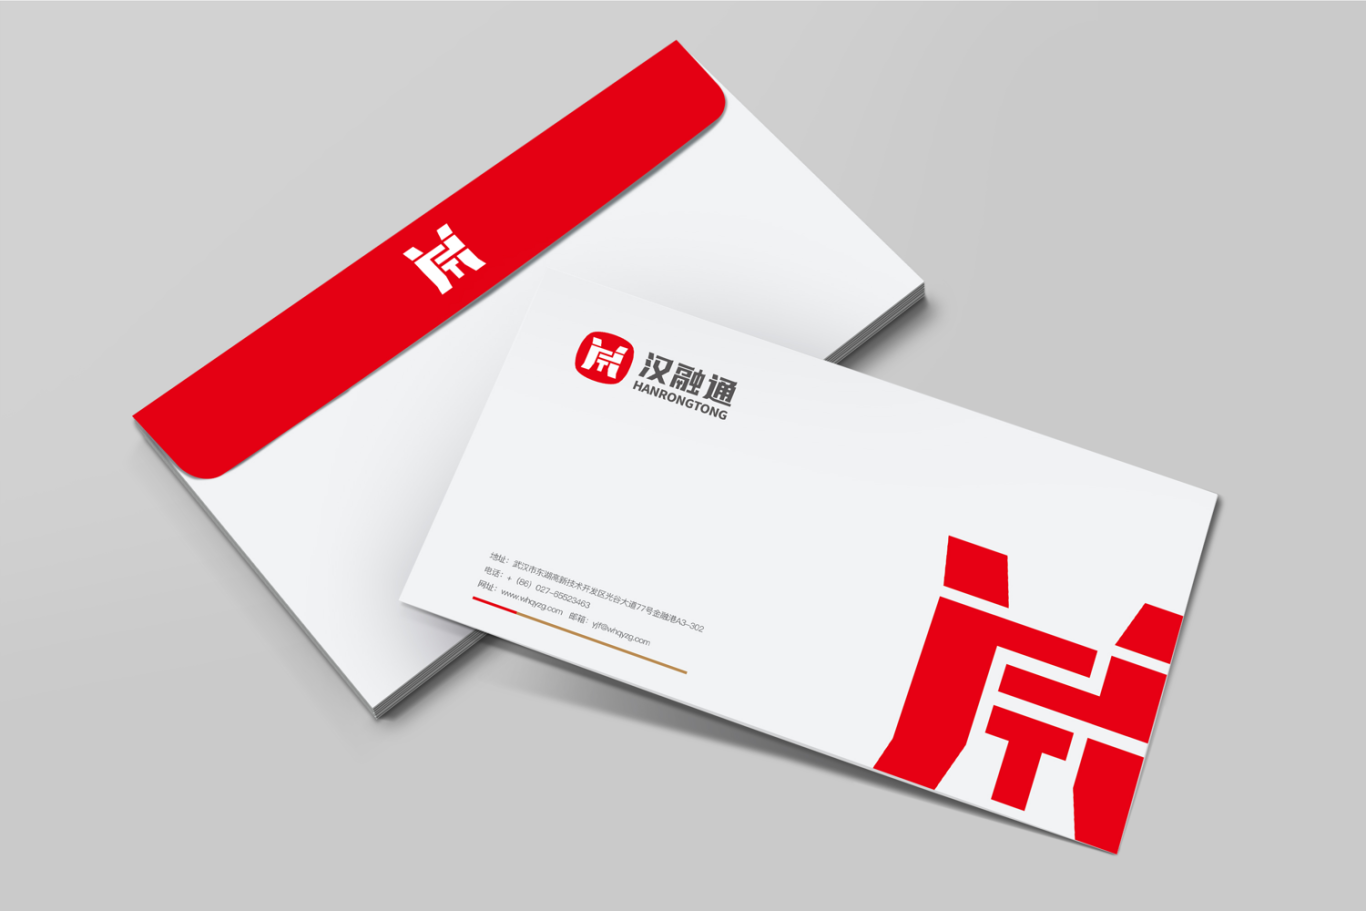 湖北金融控股集团子公司汉融通品牌logo设计图2